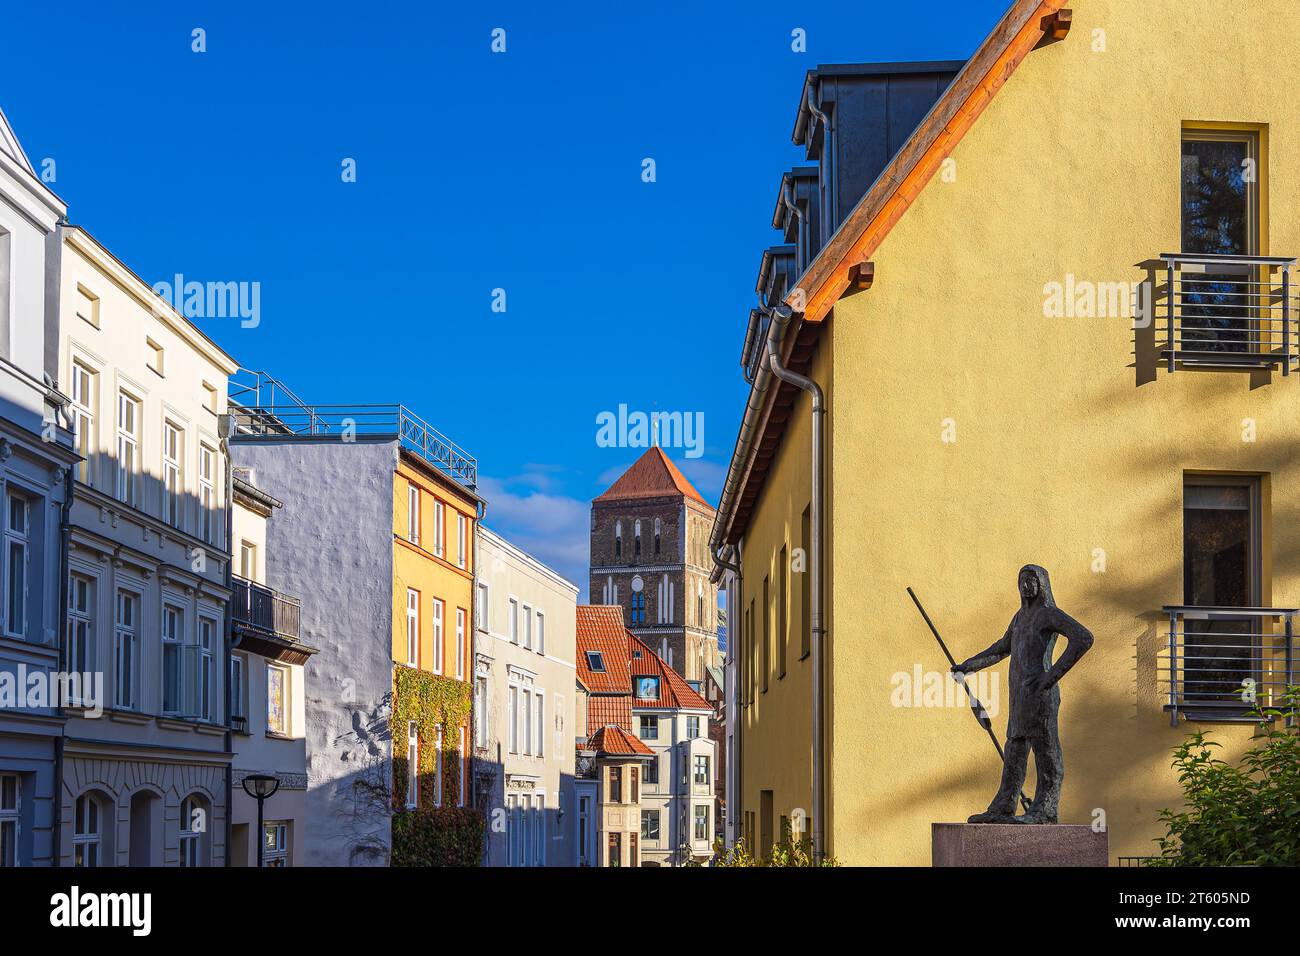 Edifici storici nella città anseatica di Rostock, Germania. Foto Stock